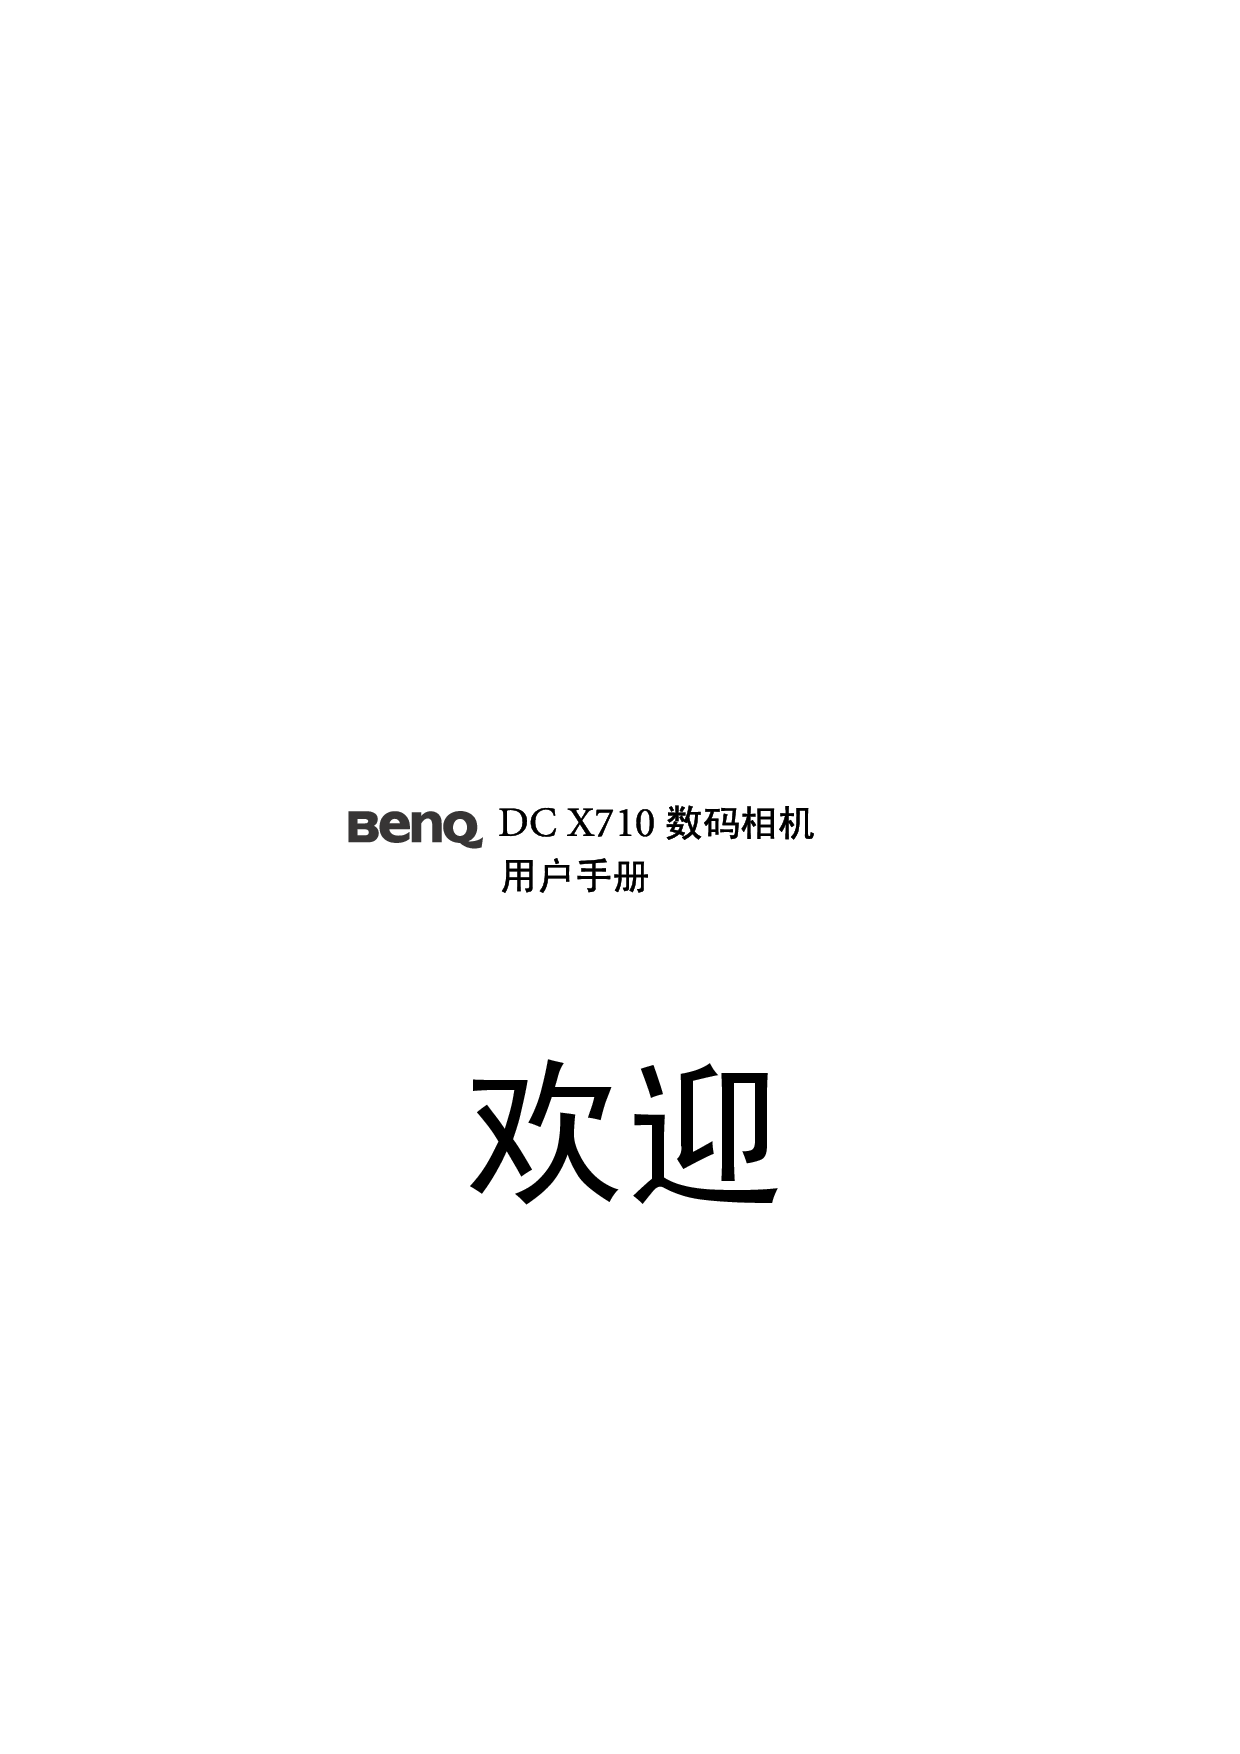 明基 Benq DC-X710 使用手册 封面